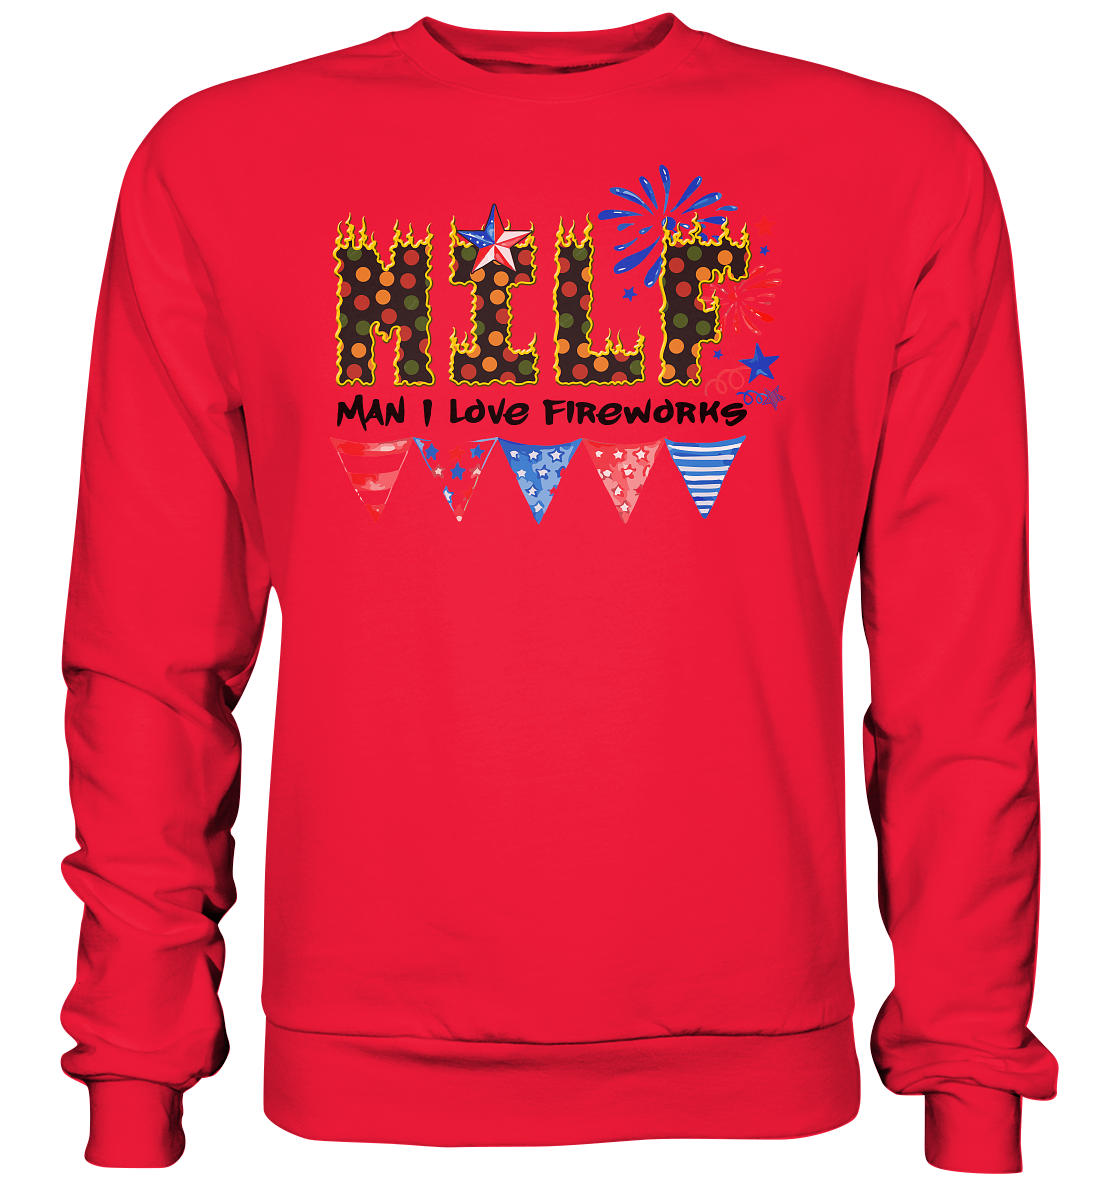 Shirt für jeden Silvesterfan m Man I Love Fireworks , Silvester , Feuerwerk, Lustiges T-Shirt - Premium Sweatshirt